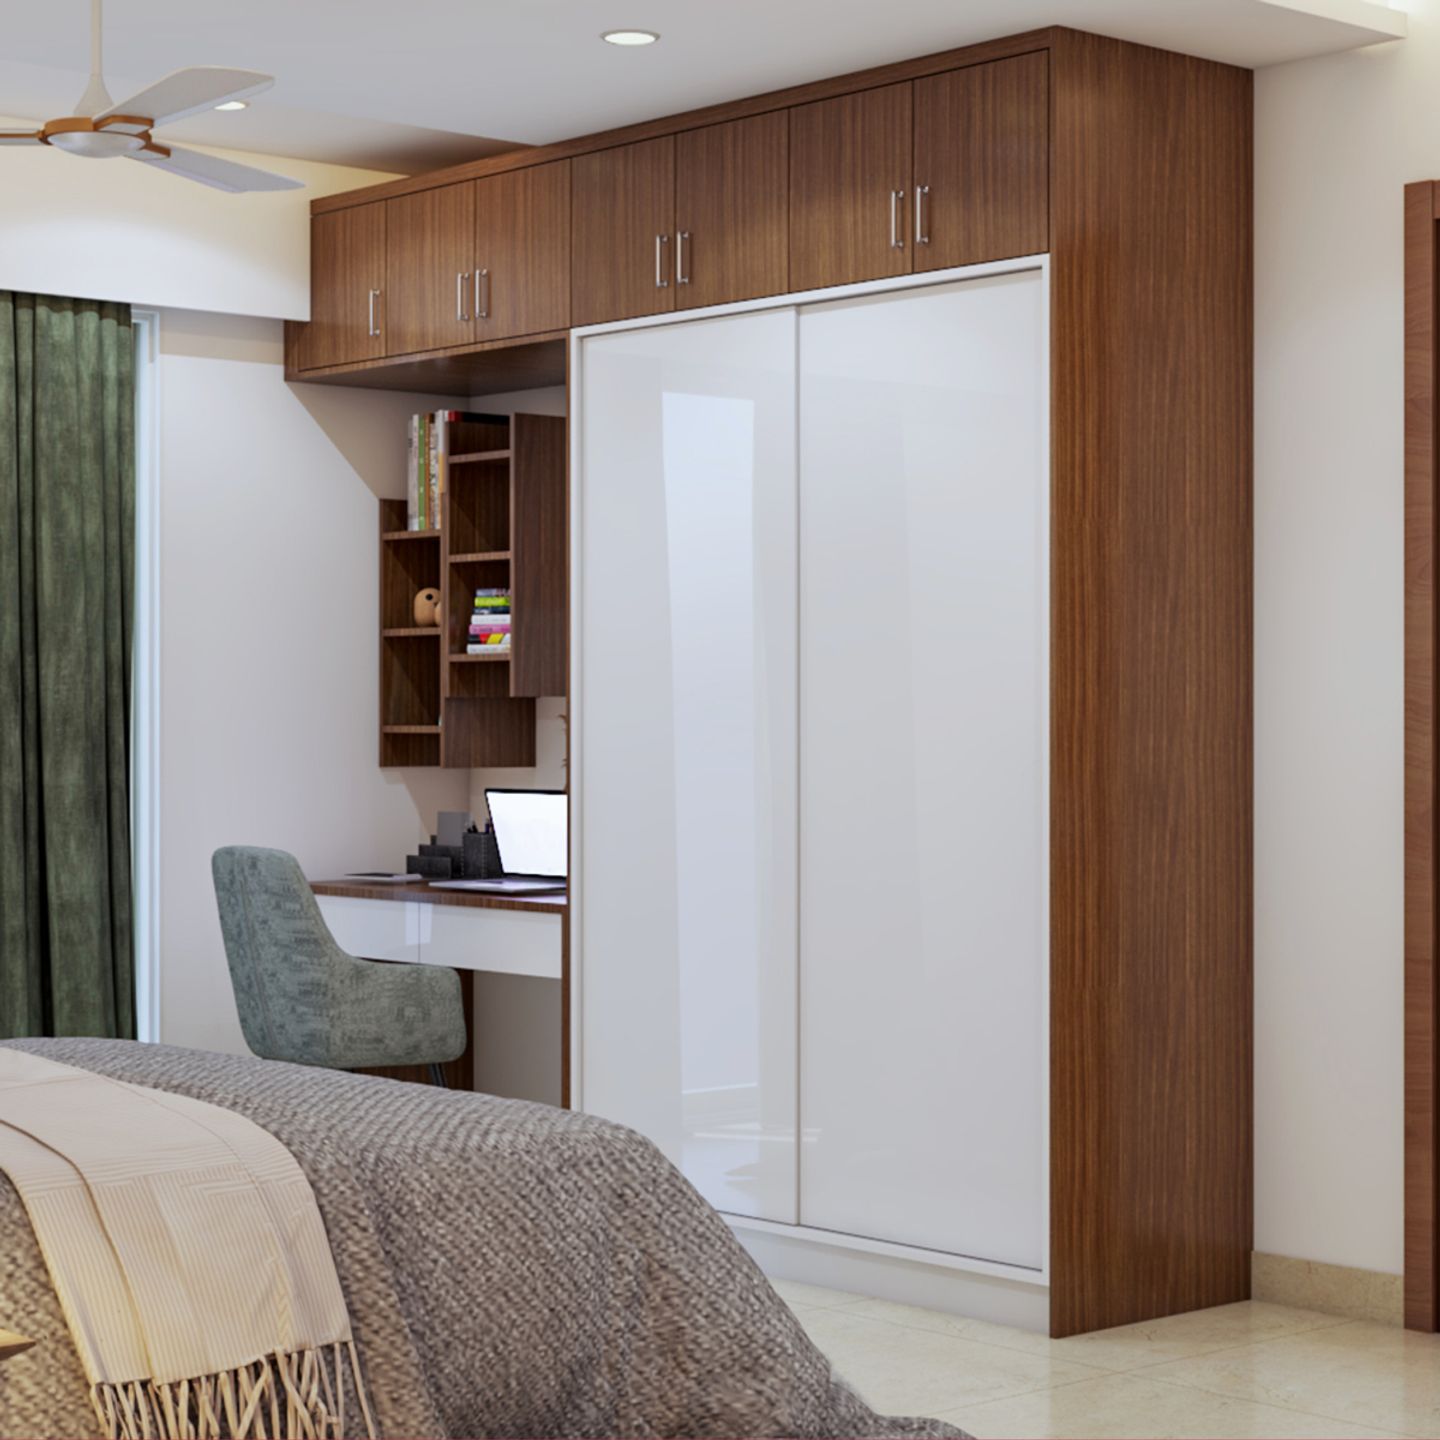 2-Door Sliding Wardrobe Design With Loft Storage - Livspace